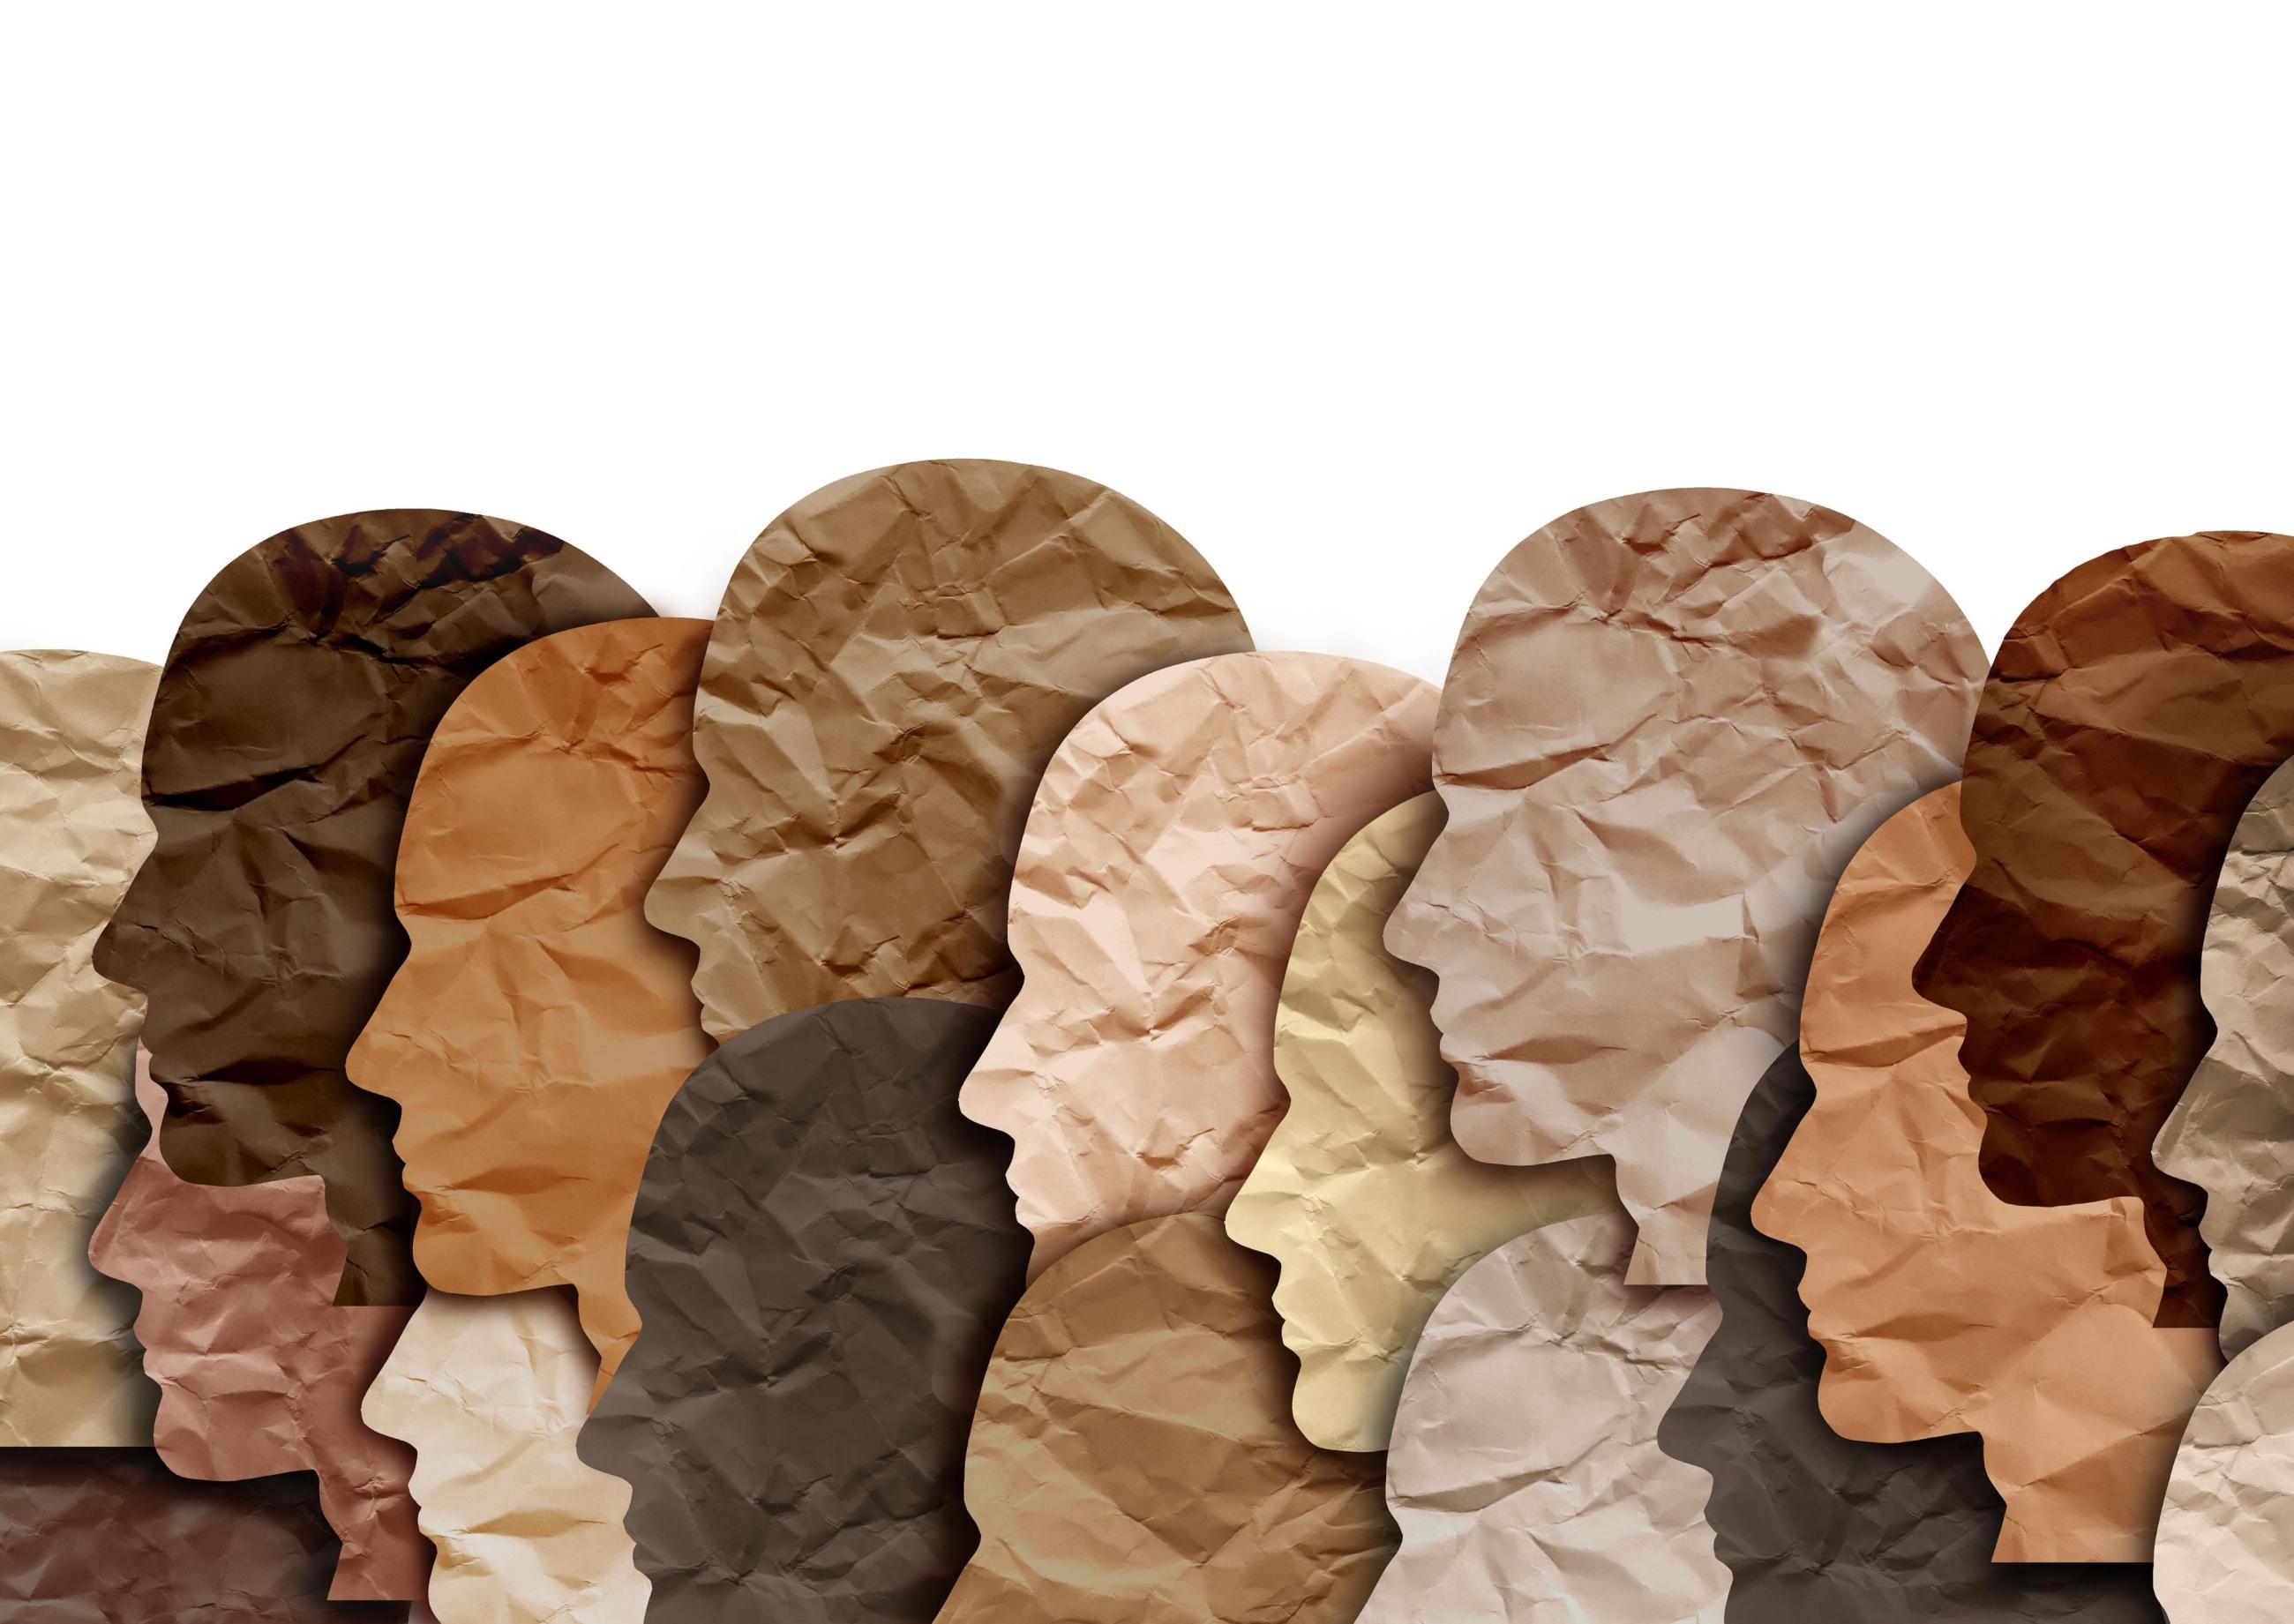 stilisierte und übereinander gelagerte Kopfkonturen aus Pappe in unterschiedlichen Hauttönen